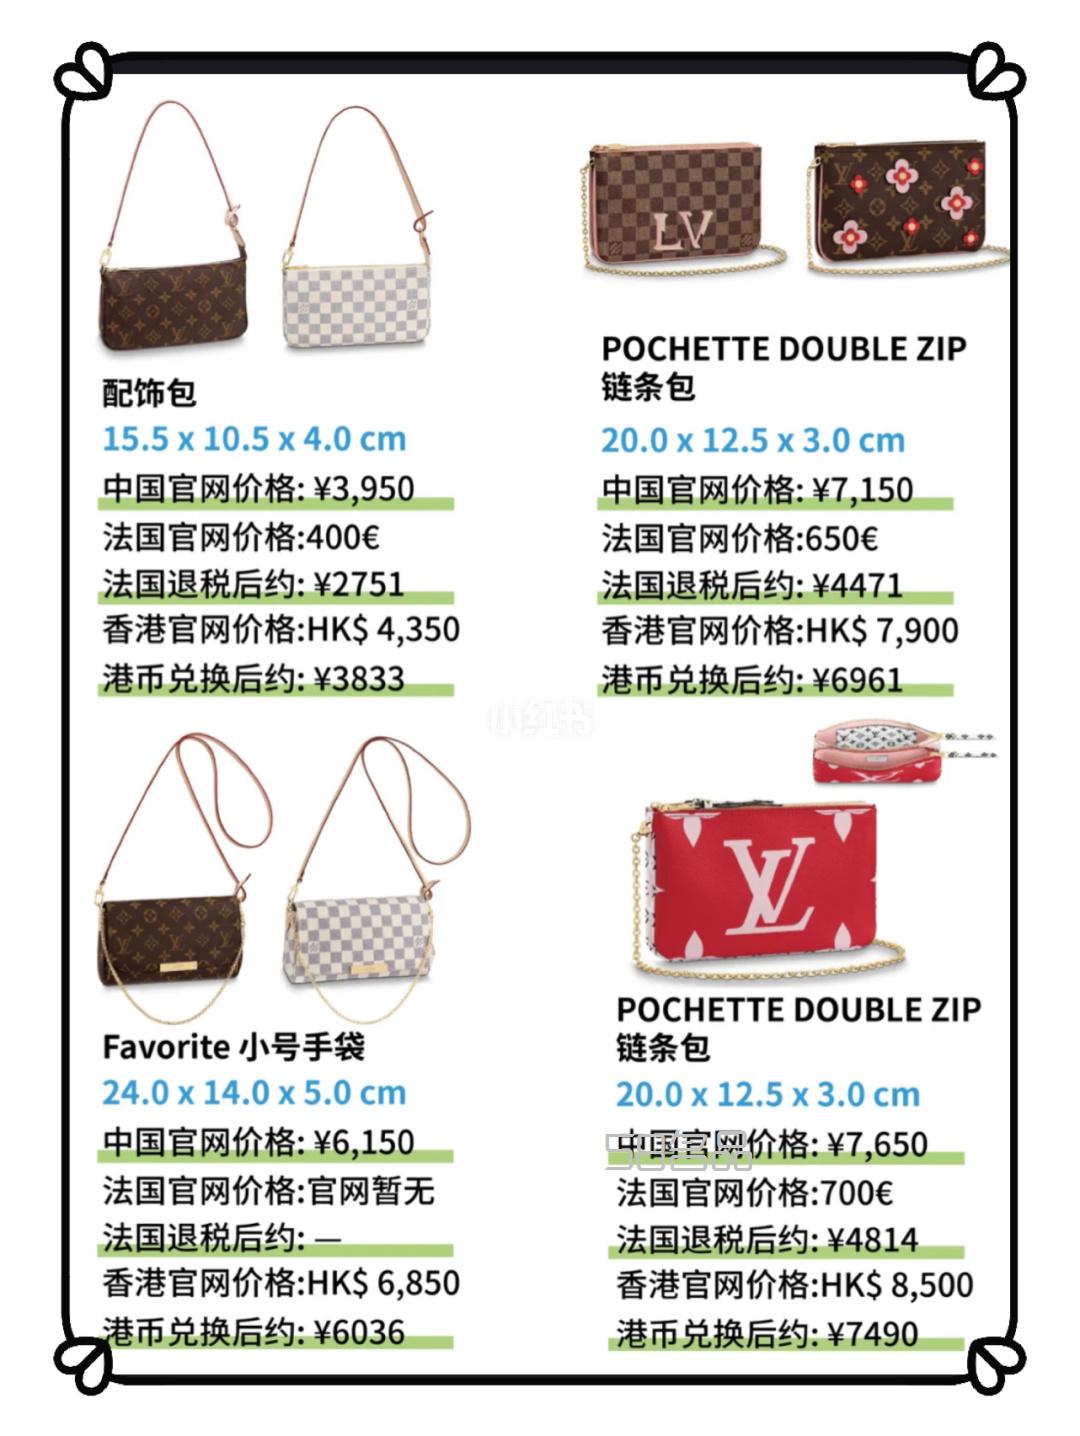 预算1w以内路易威登 Louis Vuitton lv包包,lv m60017 香港价格